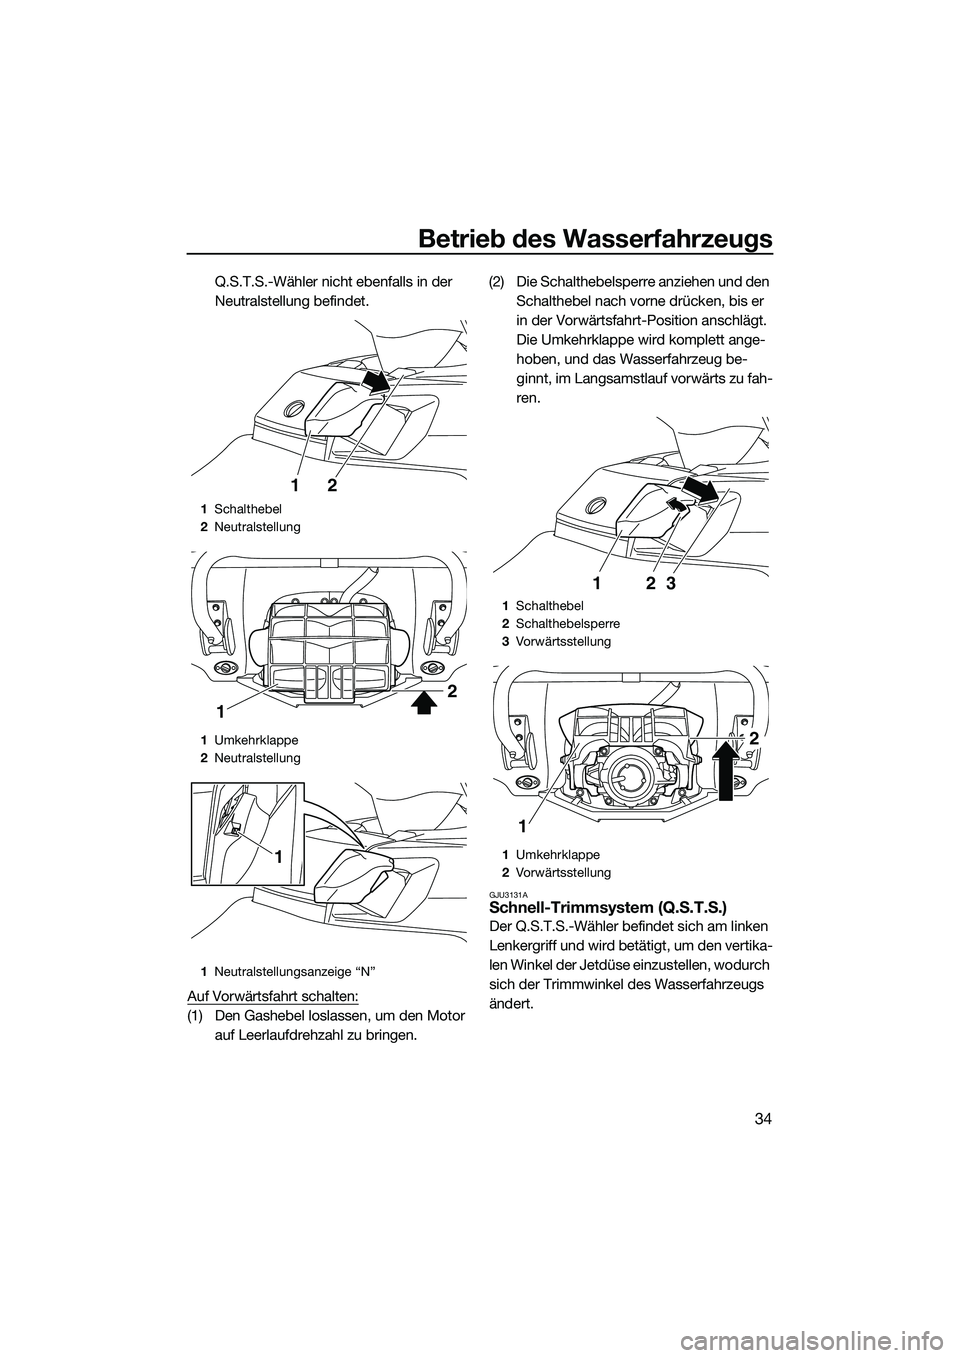 YAMAHA FX HO 2014  Betriebsanleitungen (in German) Betrieb des Wasserfahrzeugs
34
Q.S.T.S.-Wähler nicht ebenfalls in der 
Neutralstellung befindet.
Auf Vorwärtsfahrt schalten:
(1) Den Gashebel loslassen, um den Motor  auf Leerlaufdrehzahl zu bringen